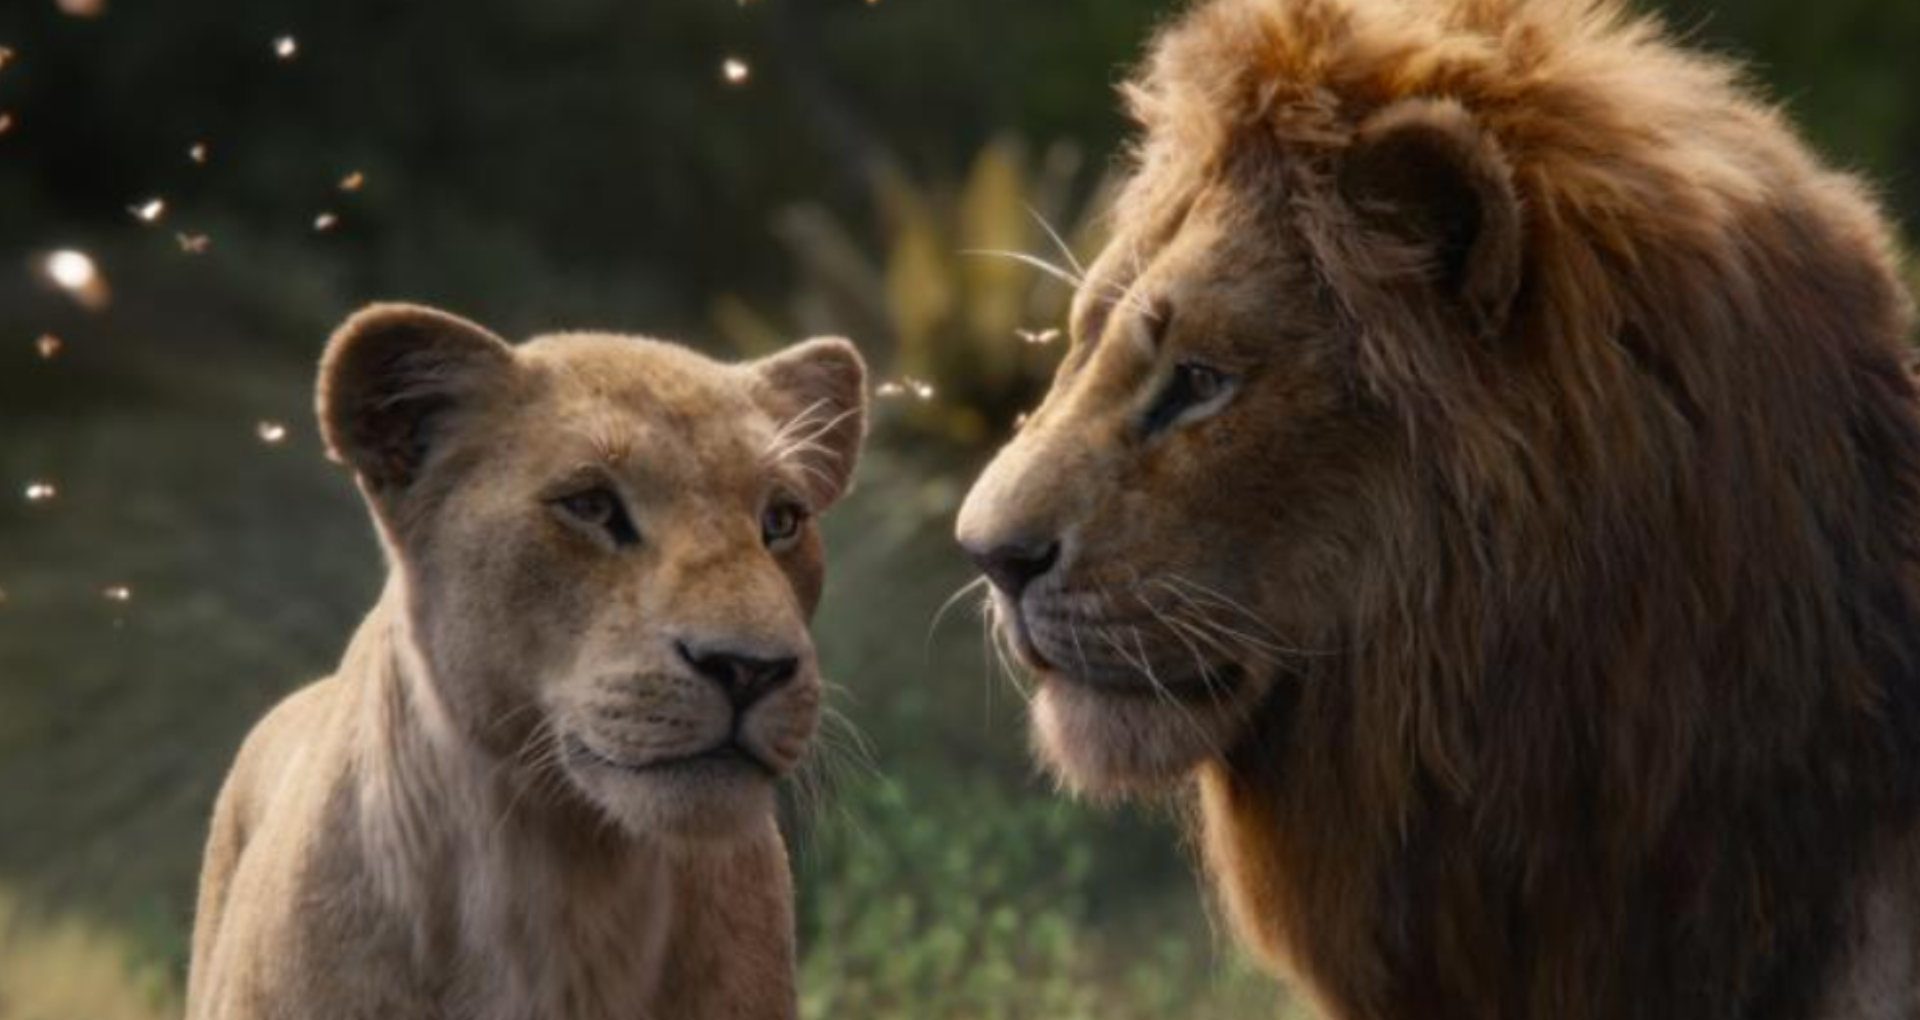 The Lion King Movie Review: शानदार विजुअल इफेक्ट, दमदार वॉयस ओवर, लेकिन इमोशनल टच देने में नाकामयाब रही फिल्म